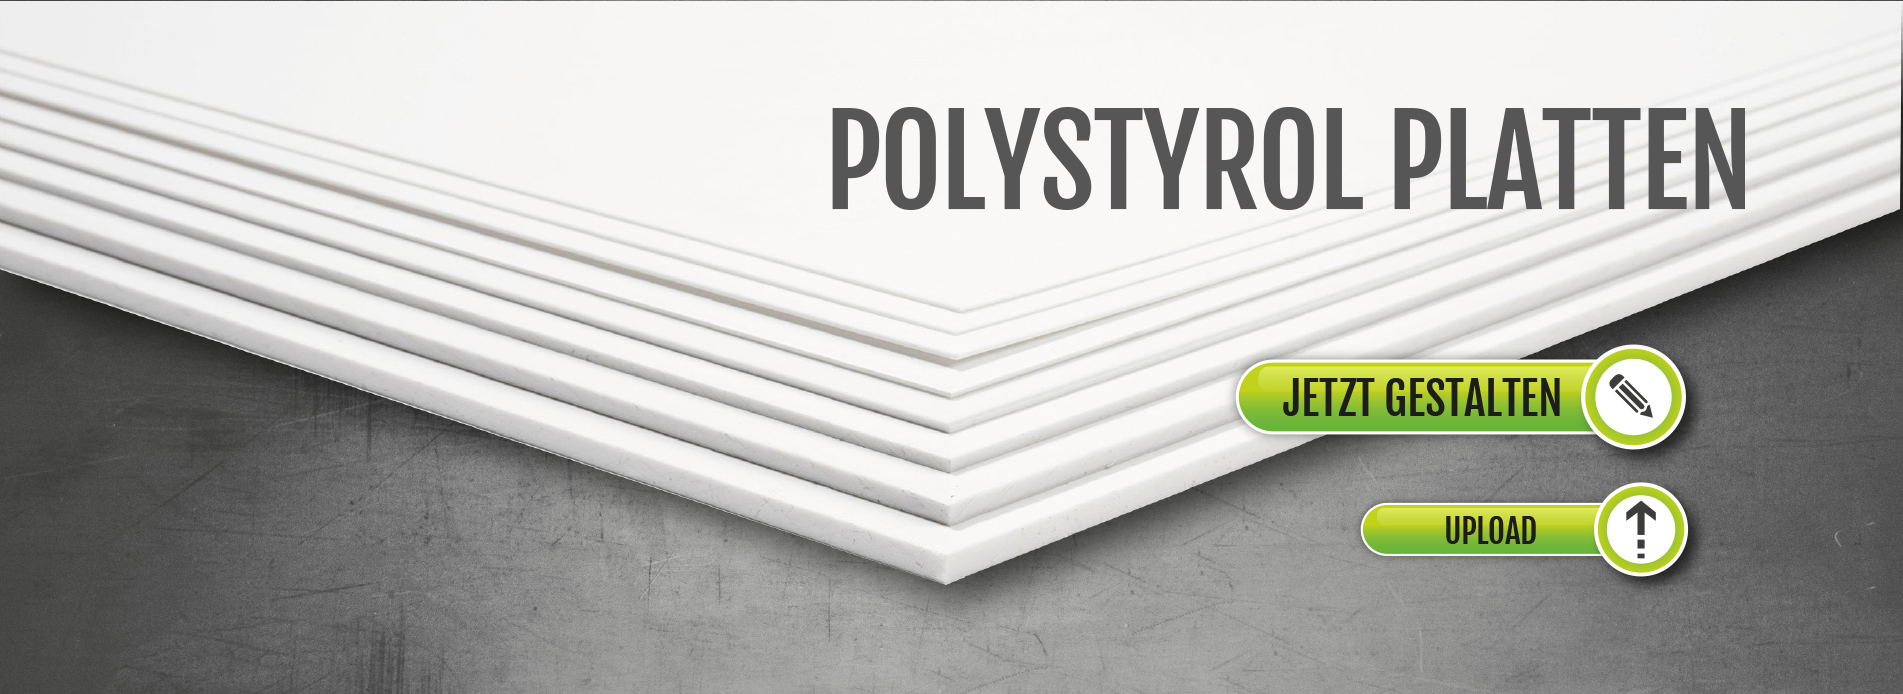 Poystyrolplatten bedrucken, Polystyrol Schilder